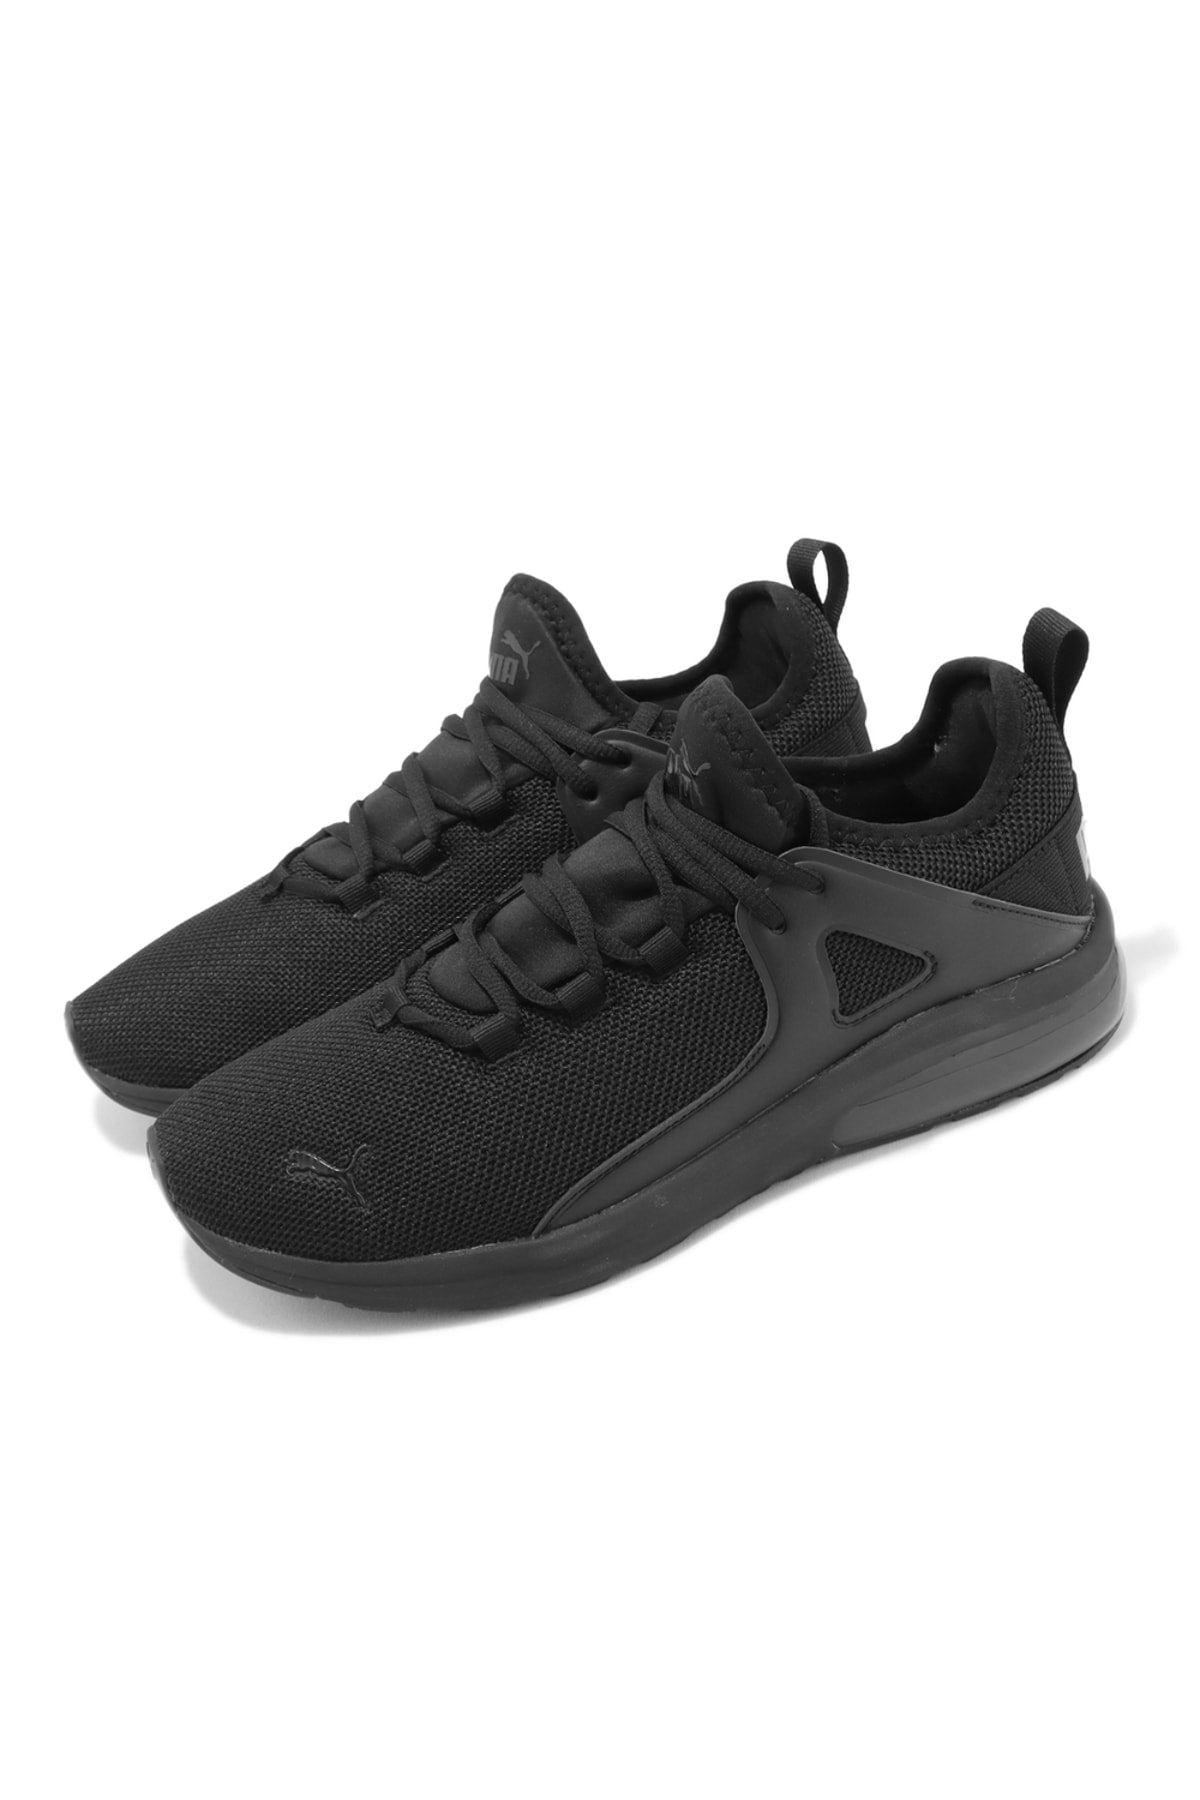 Electron 2.0 - Black Men's Shoes